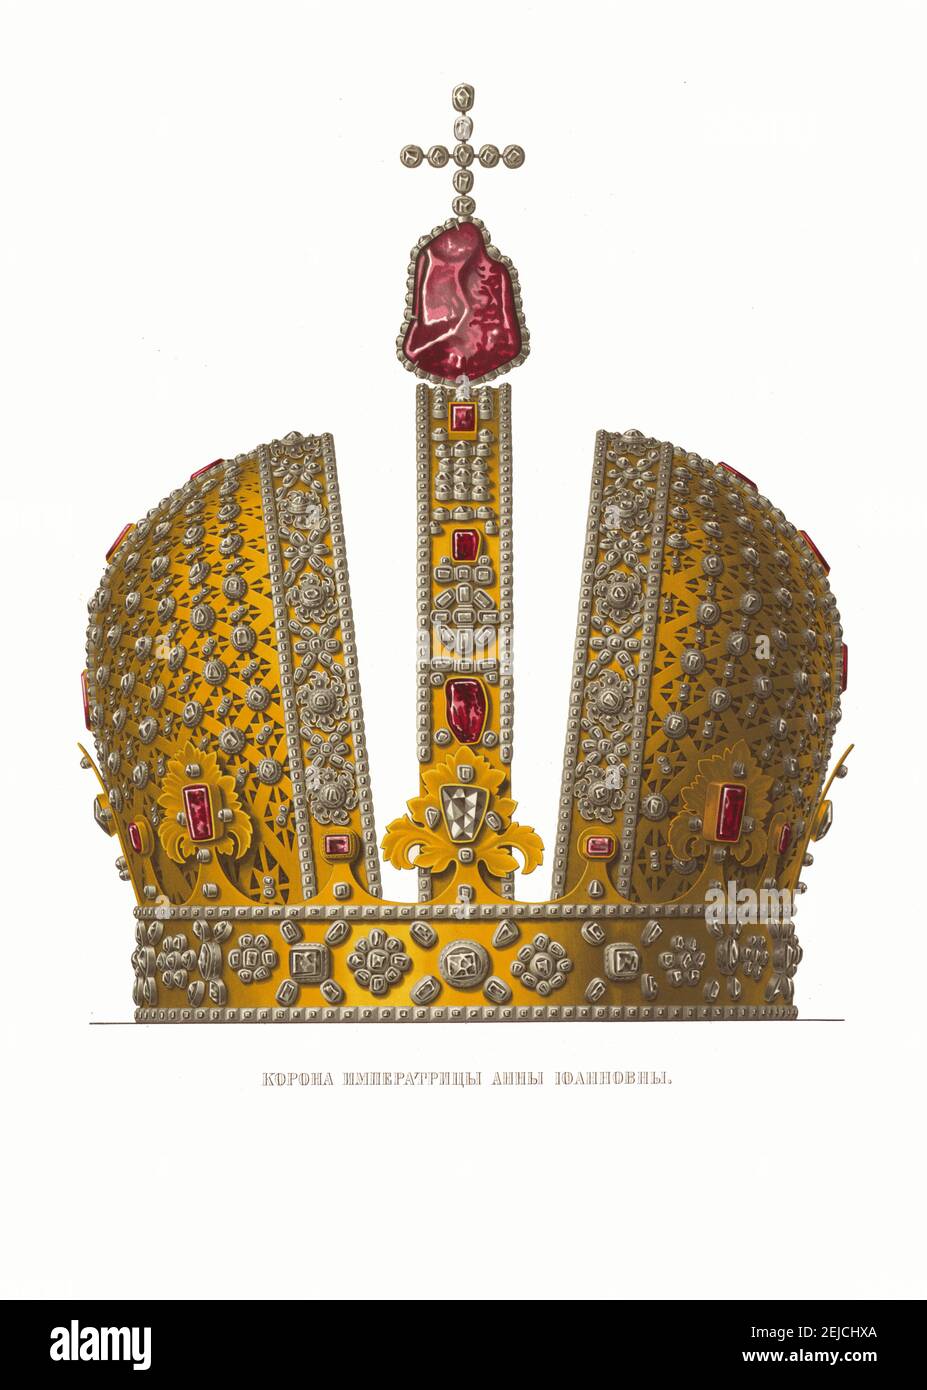 La Corona Imperiale dell'imperatrice Anna Ioannovna. Dalle Antichità dello Stato russo. Museo: COLLEZIONE PRIVATA. Autore: Fyodor Grigoryevich Solntsev. Foto Stock